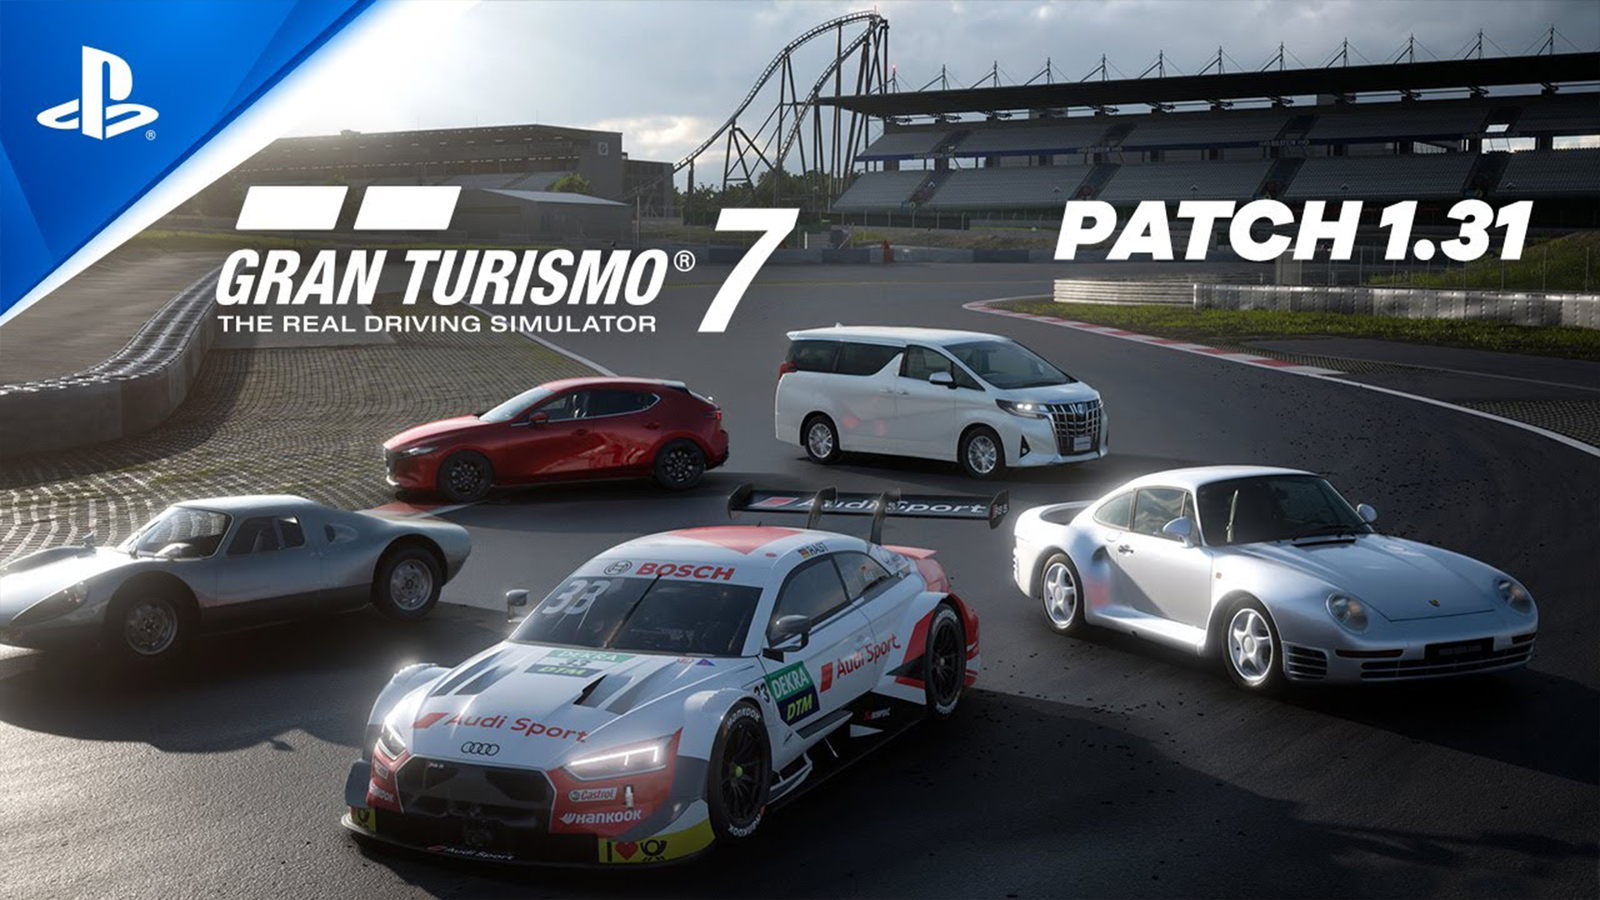 Gran Turismo 7 - Ultimate driving simulator